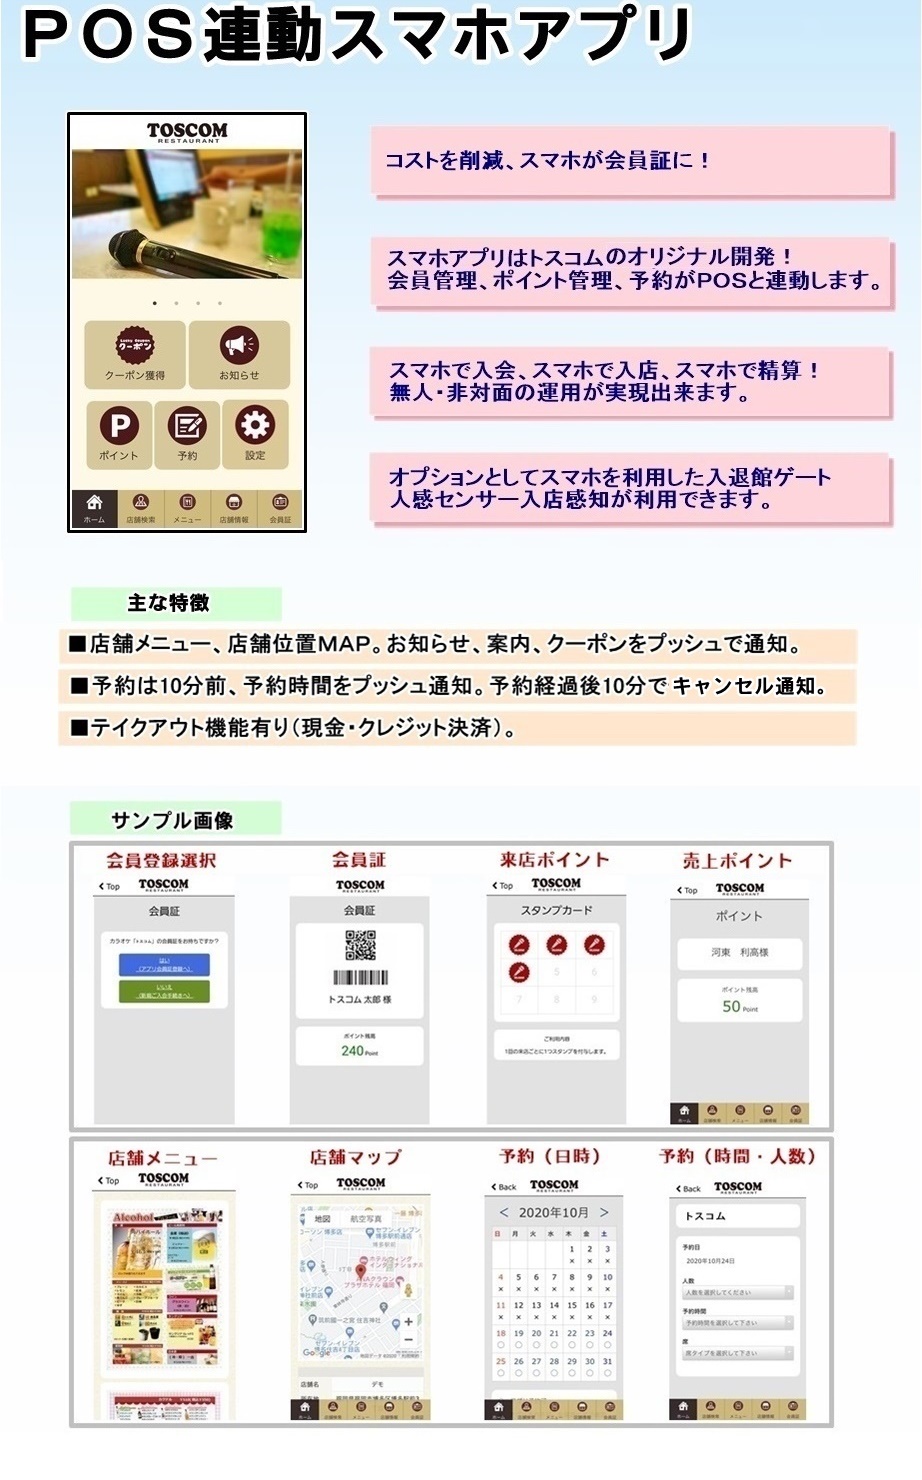 株式会社 トスコム「POS連動スマホアプリ」